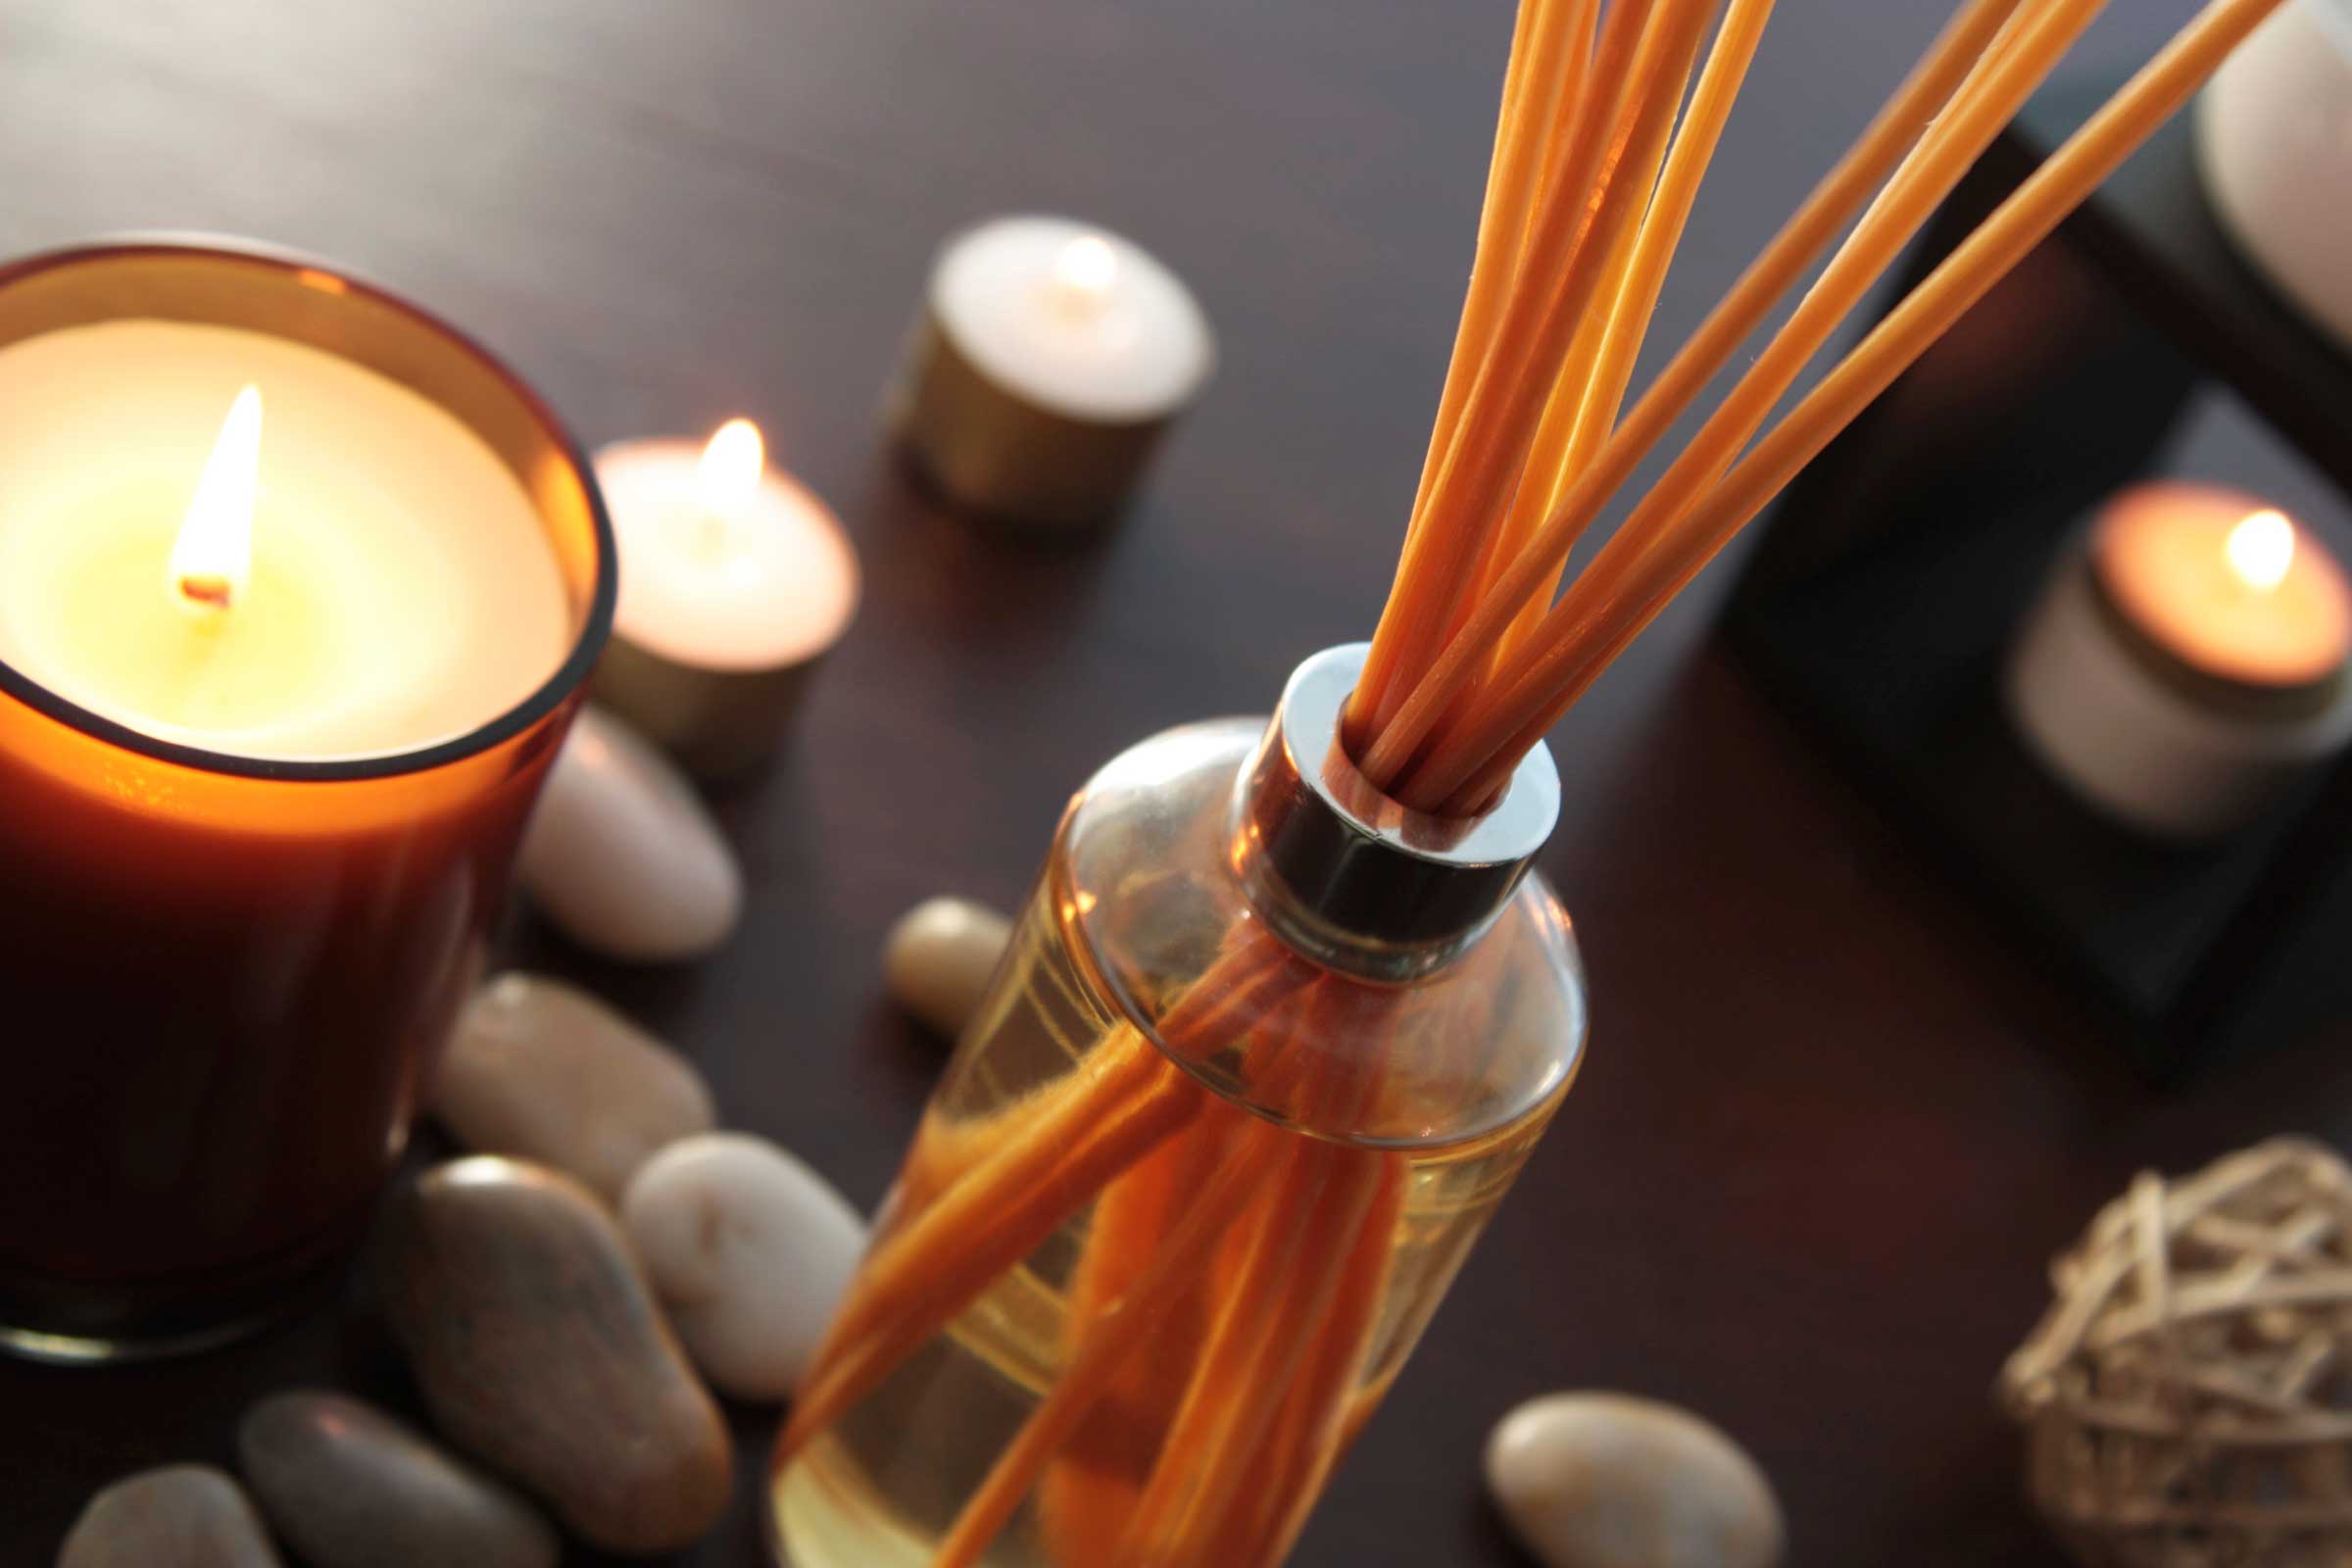 Как сделать приятный запах в квартире: аромамасла, саше или помандер